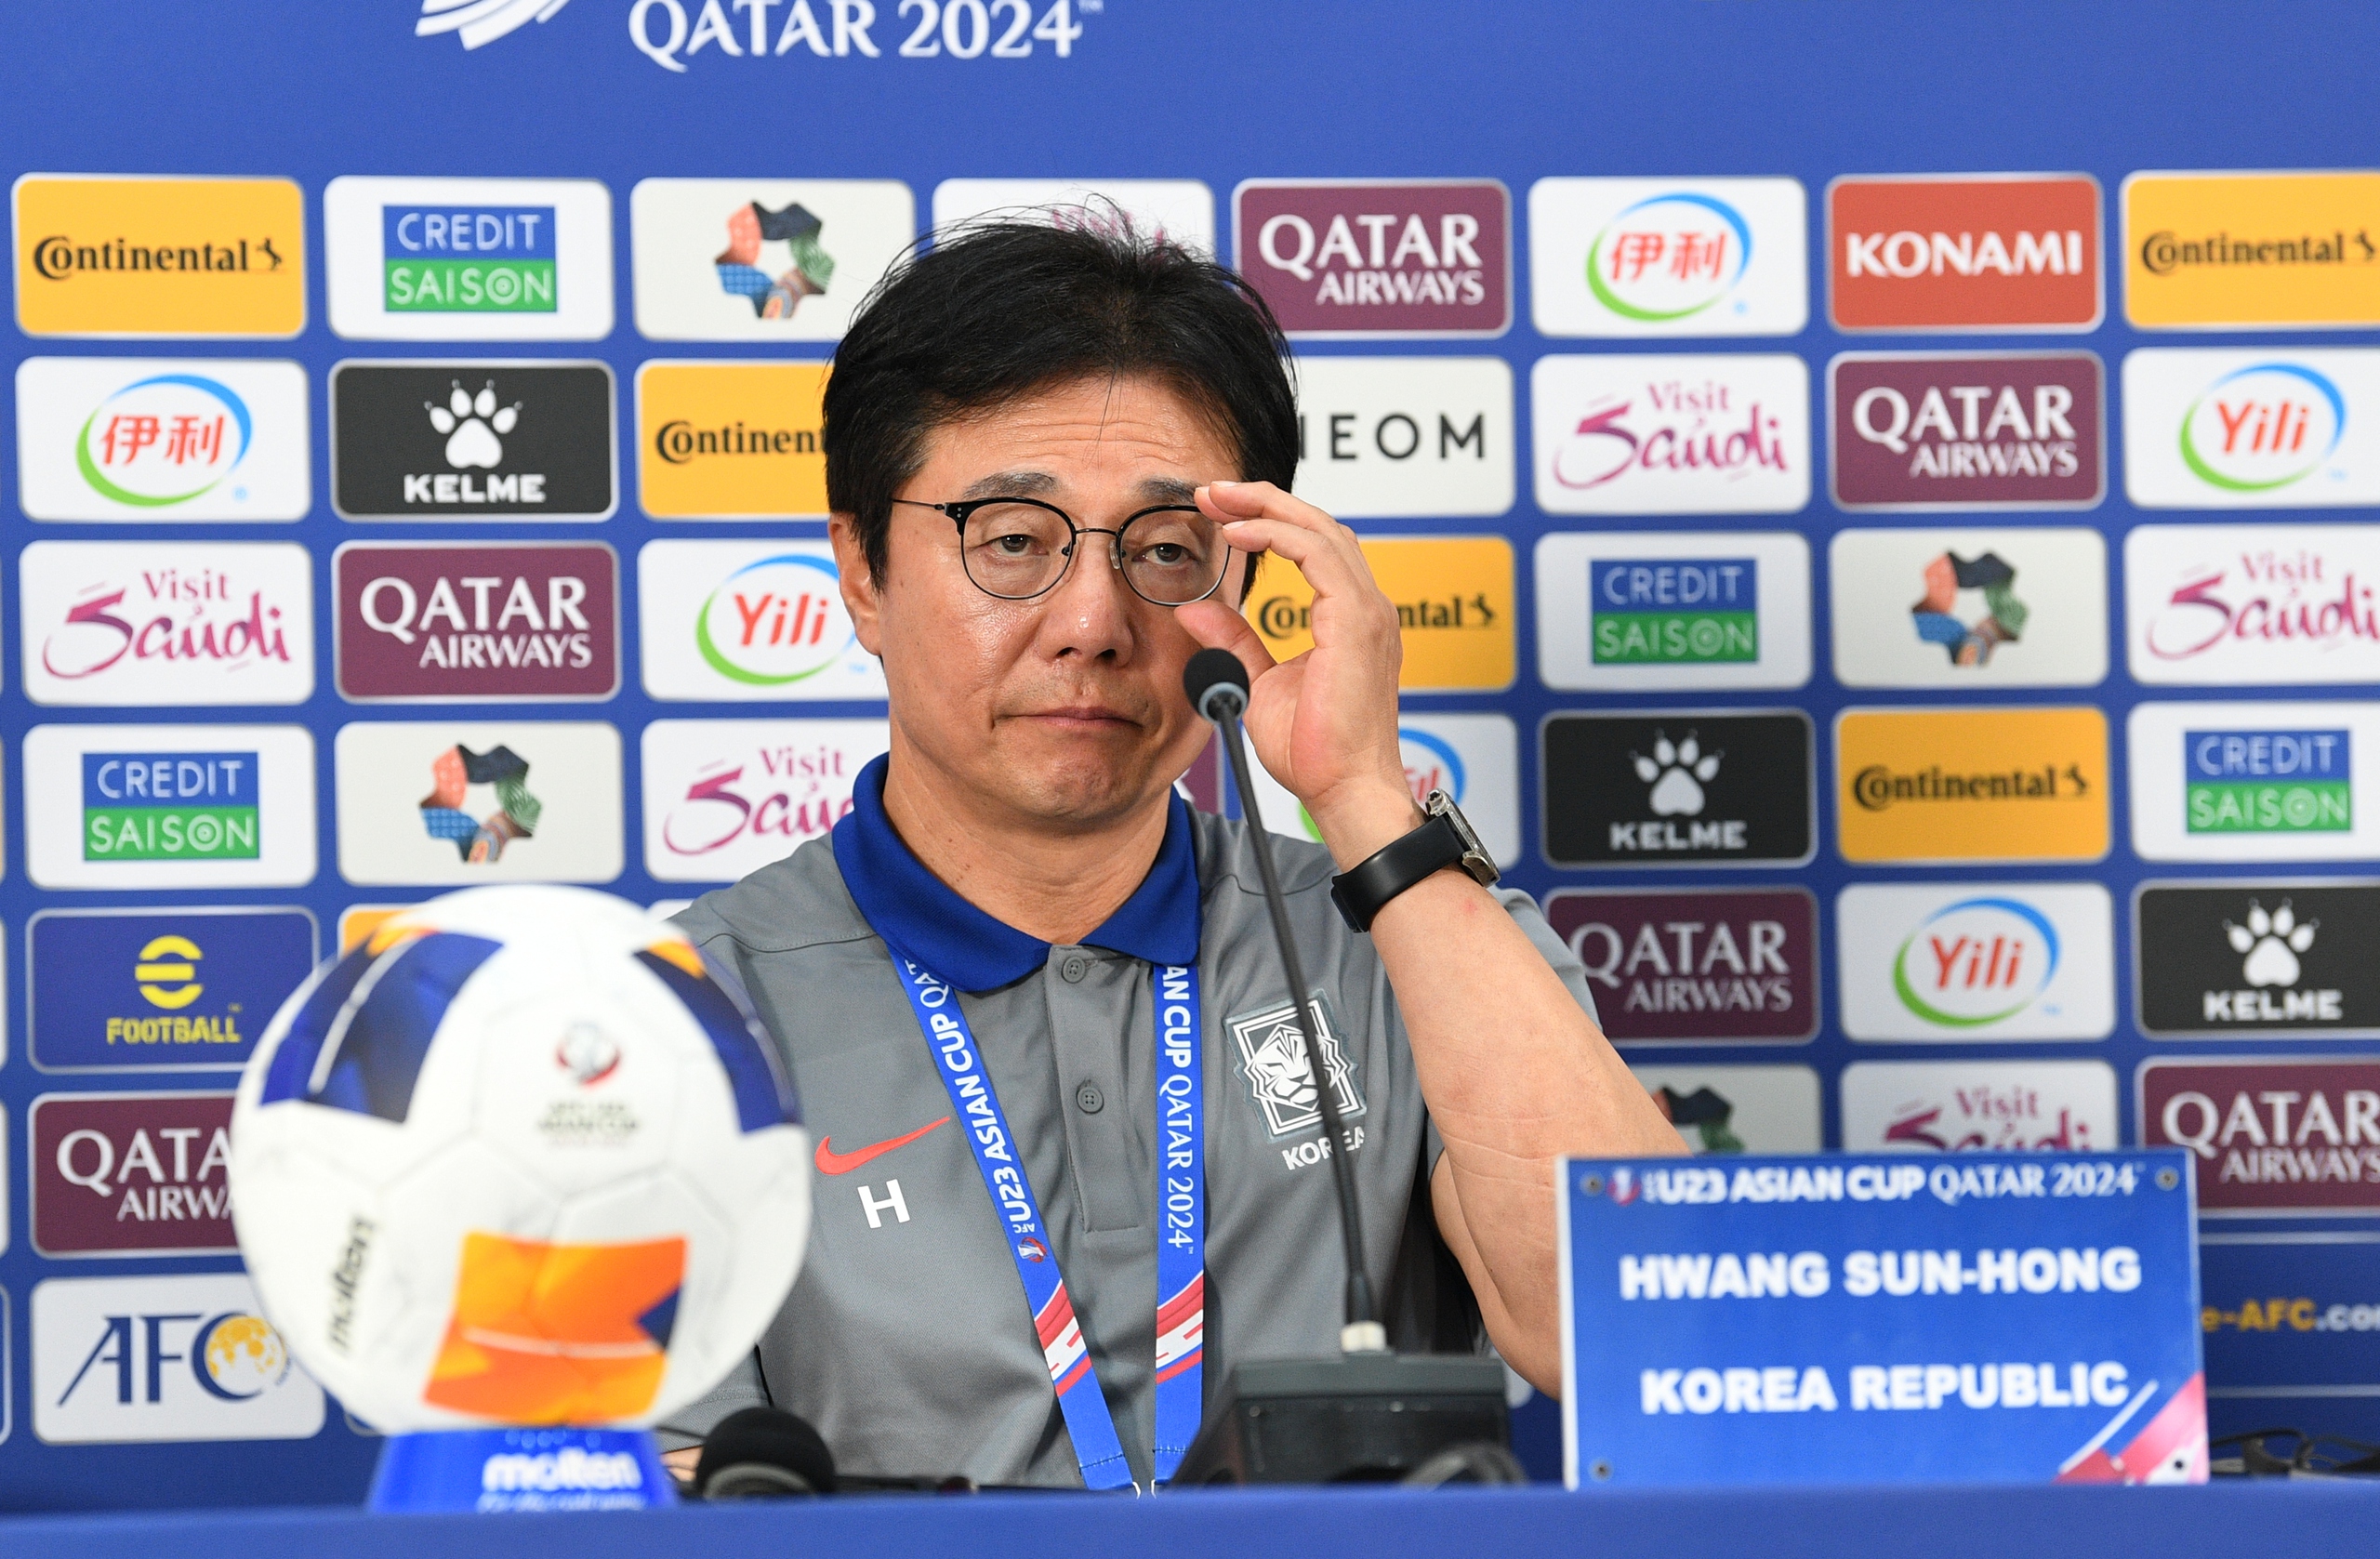 HLV Hwang Sun-hong cho rằng U.23 Indonesia không phải là đối thủ dễ chơi đối với U.23 Hàn Quốc